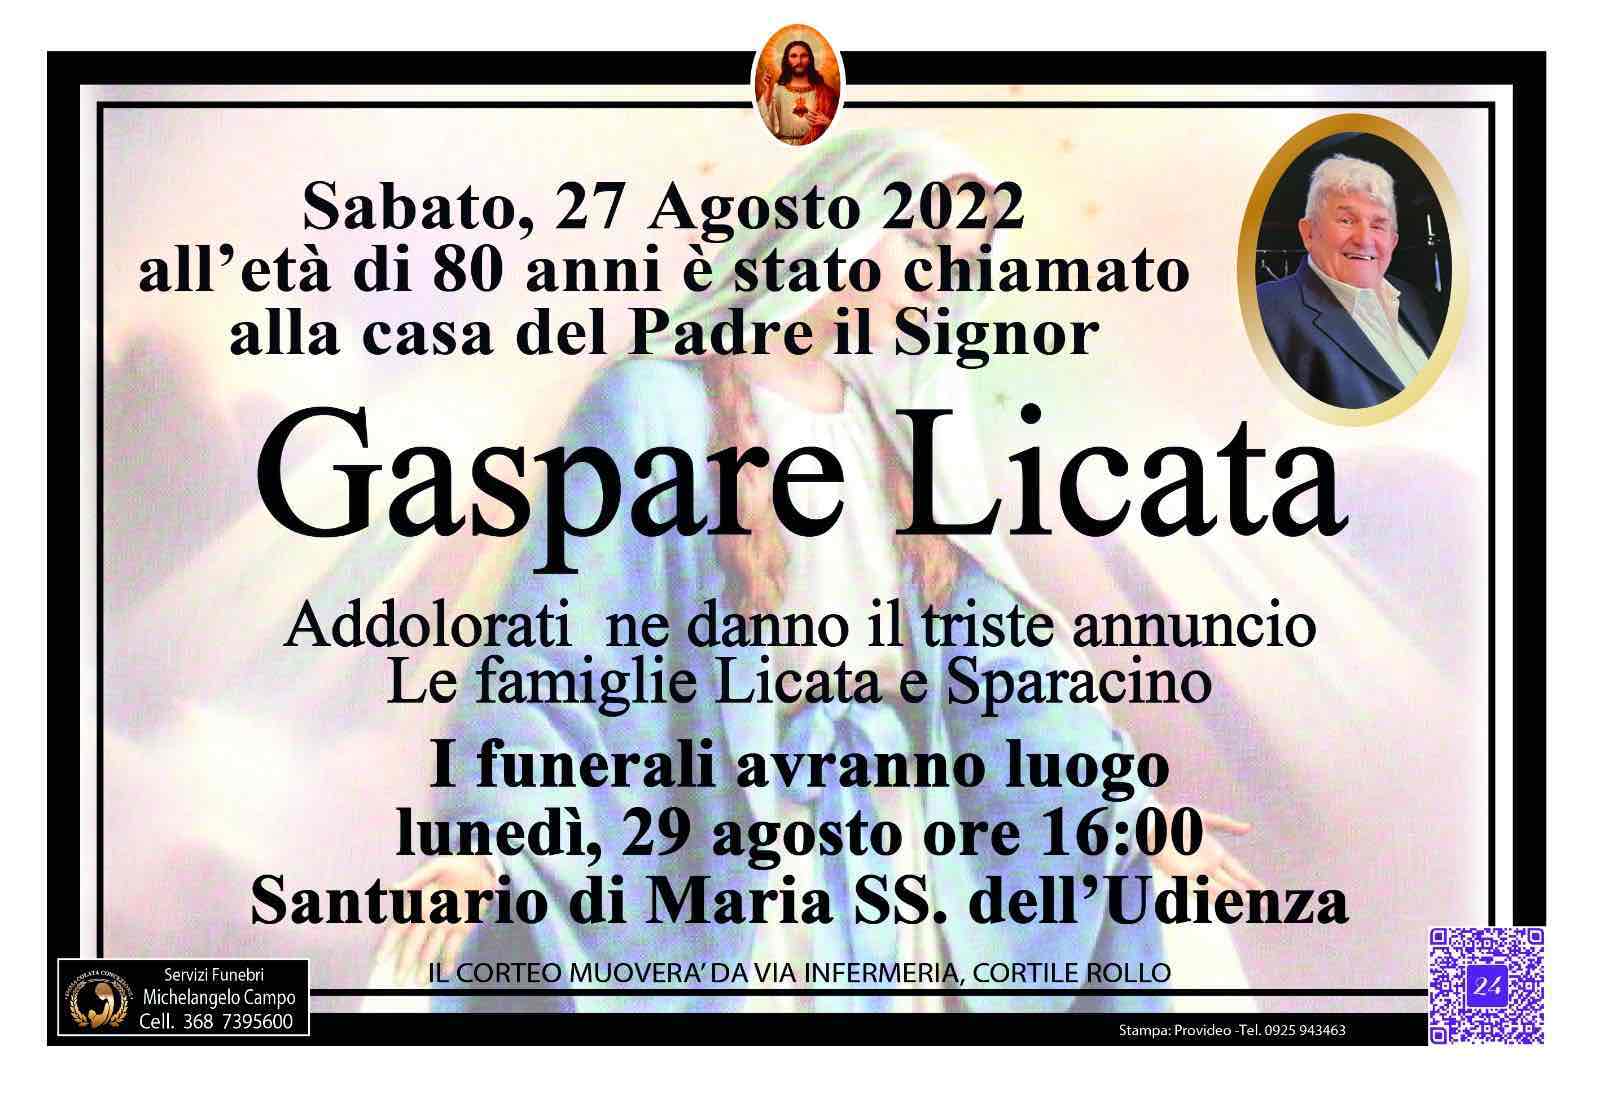 Gaspare Licata